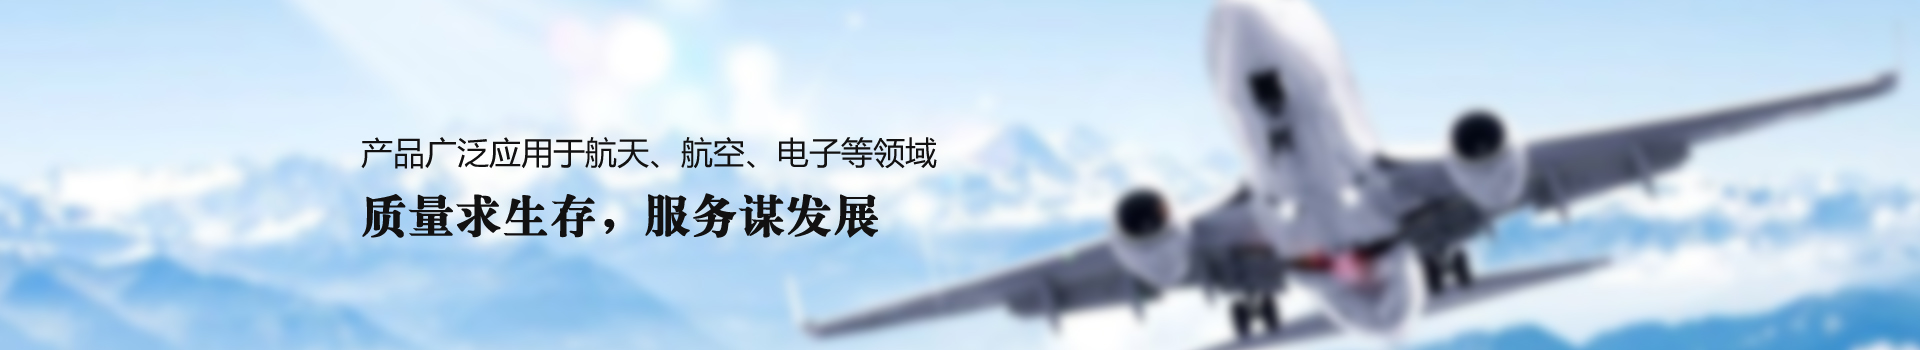 西工大航天航空钛合金材料产学研科创中心落户重庆两江